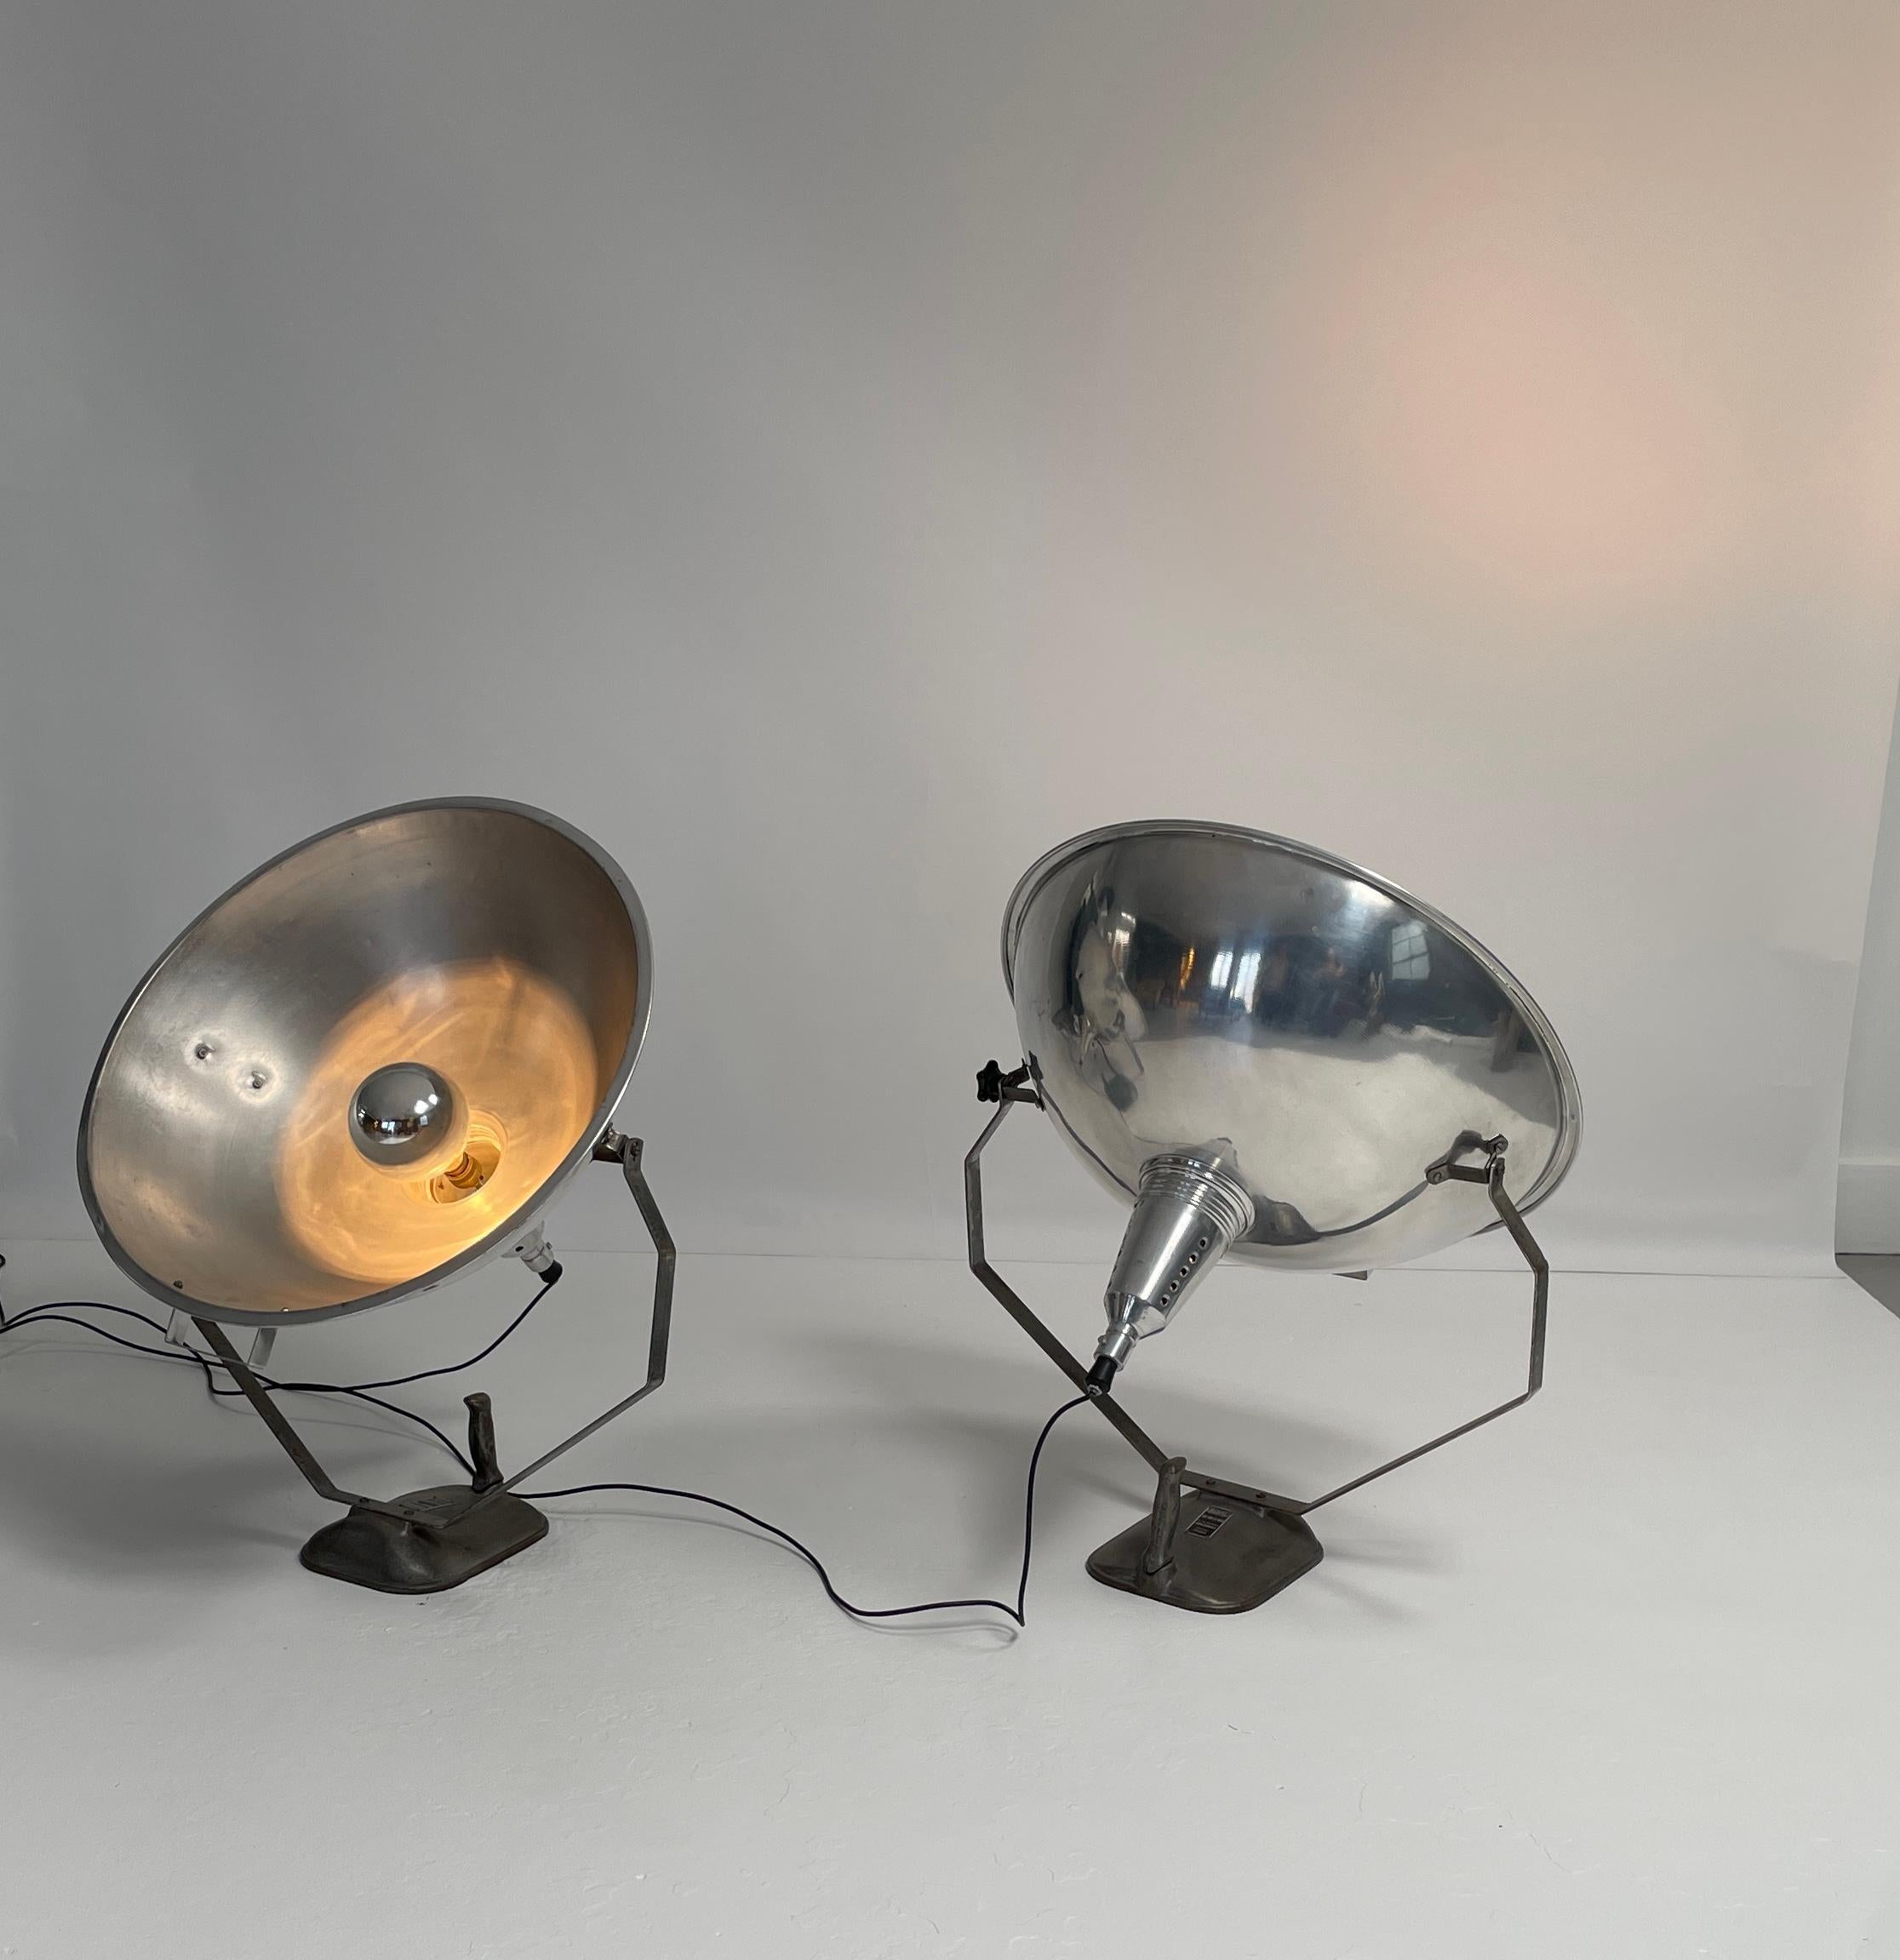 Zwei einzigartige Lichter.  Diese Projektorlampen stammen aus französischen Filmstudios in Paris.  Sie haben eine große historische Bedeutung.  Die Köpfe sind schwenkbar und die Glühbirnen können im Gehäuse verstellt werden.  Sie sind nicht nur eine